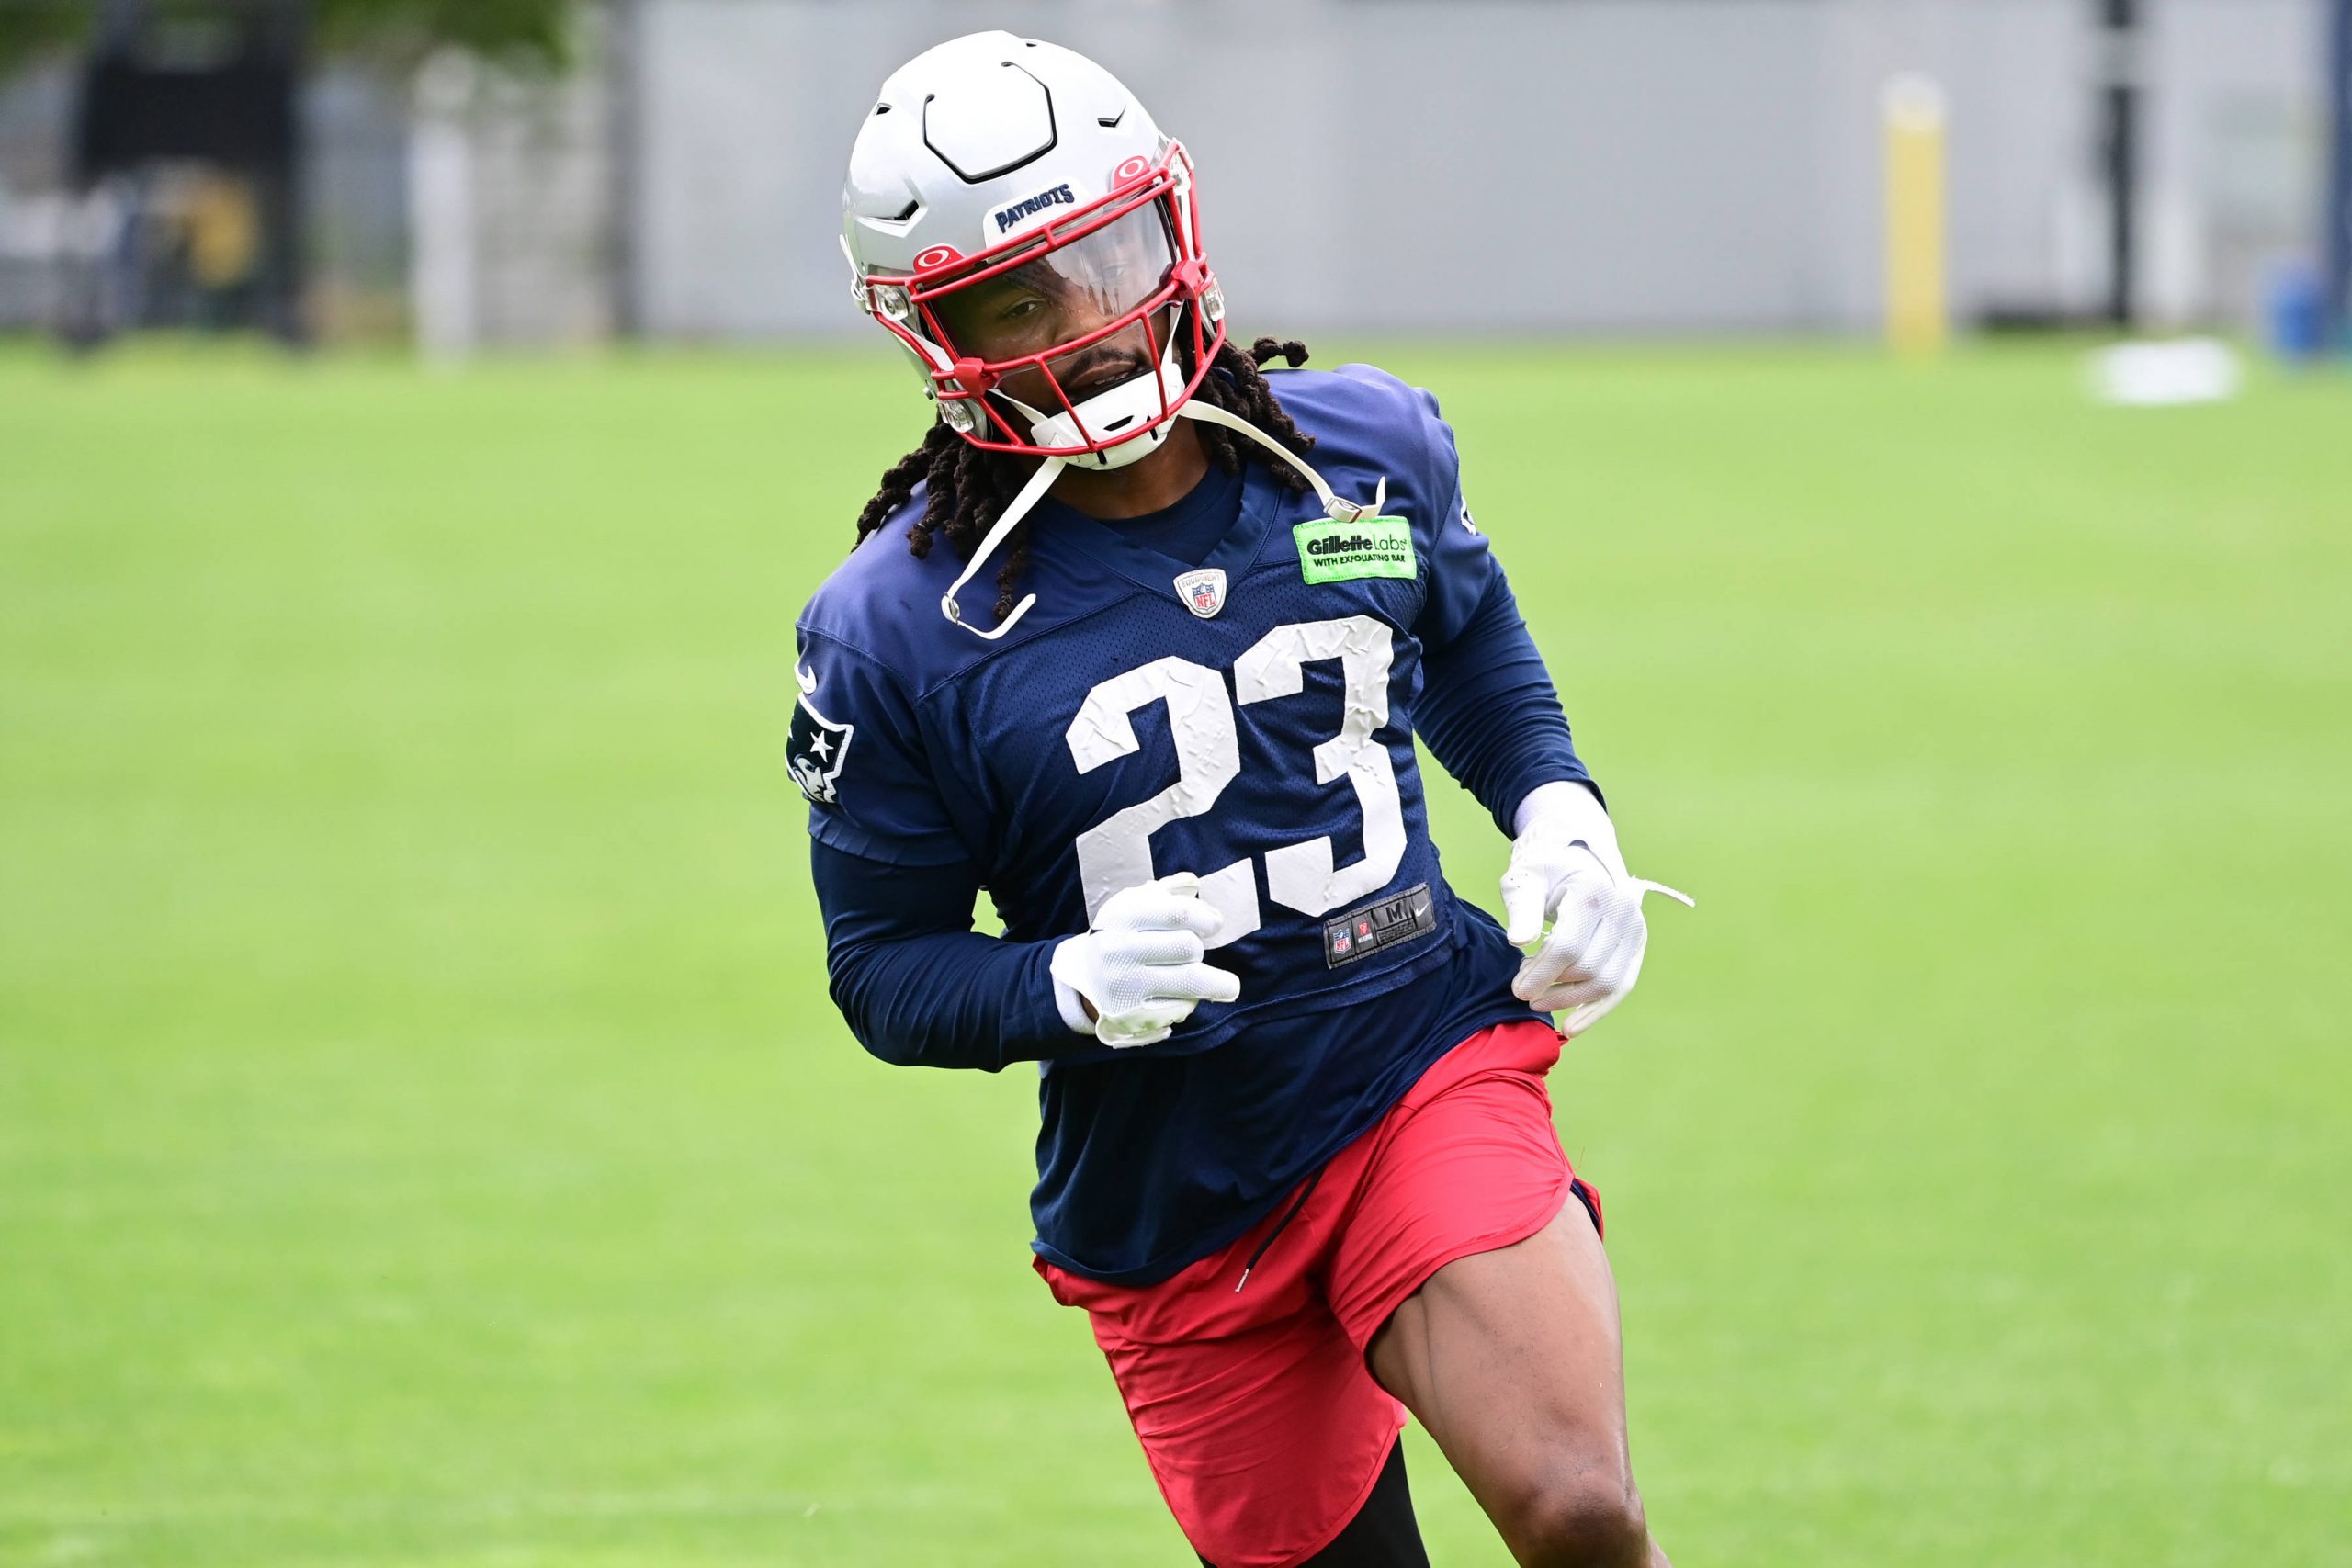 FootballR - NFL - Kyle Dugger, ein American-Football-Safety für die New England Patriots, trägt die Nummer 23, trainiert auf dem Feld, trägt einen weißen Helm, ein blaues Trikot und rote Shorts, konzentriert und Diese Beschreibung wurde automatisch generiert.